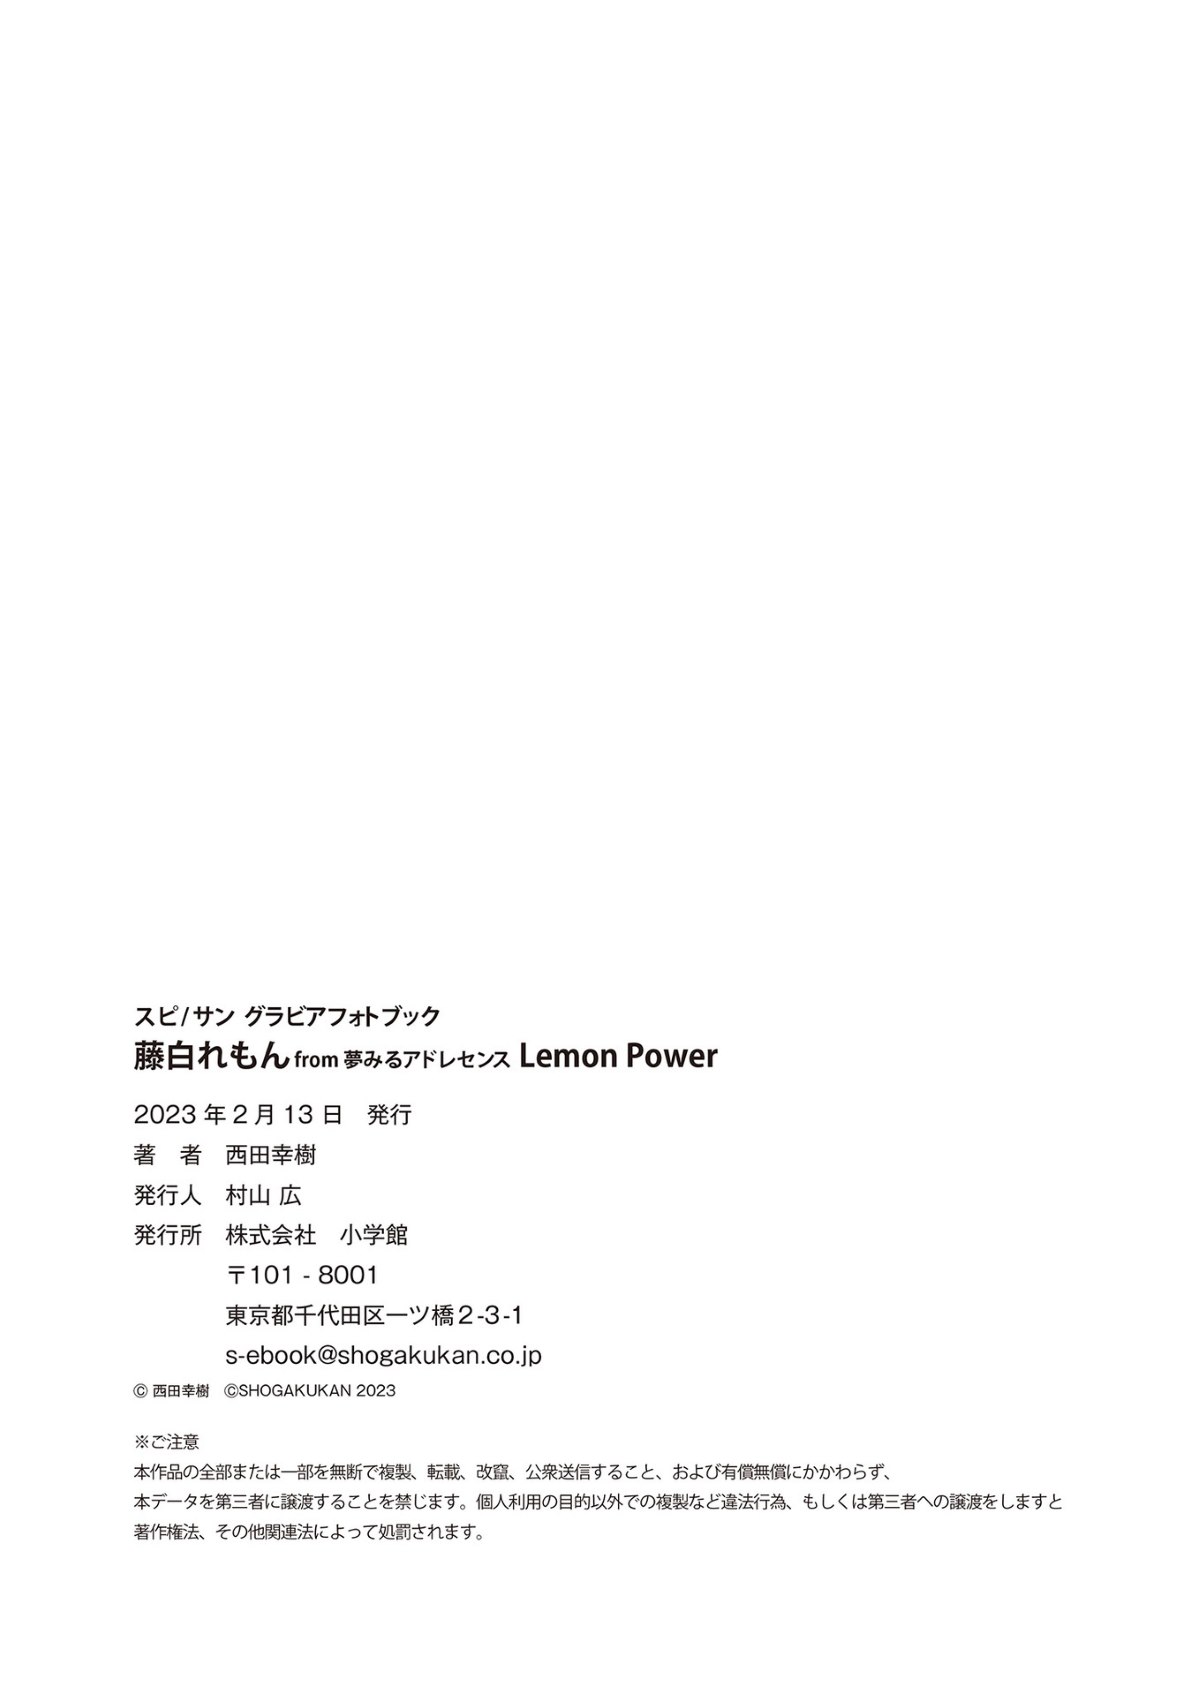 Lemon Fujishiro 藤白れもん From Yumemiru Adolescence Lemon Power Spisan Gravure Photo Book 0036 3532075413.jpg